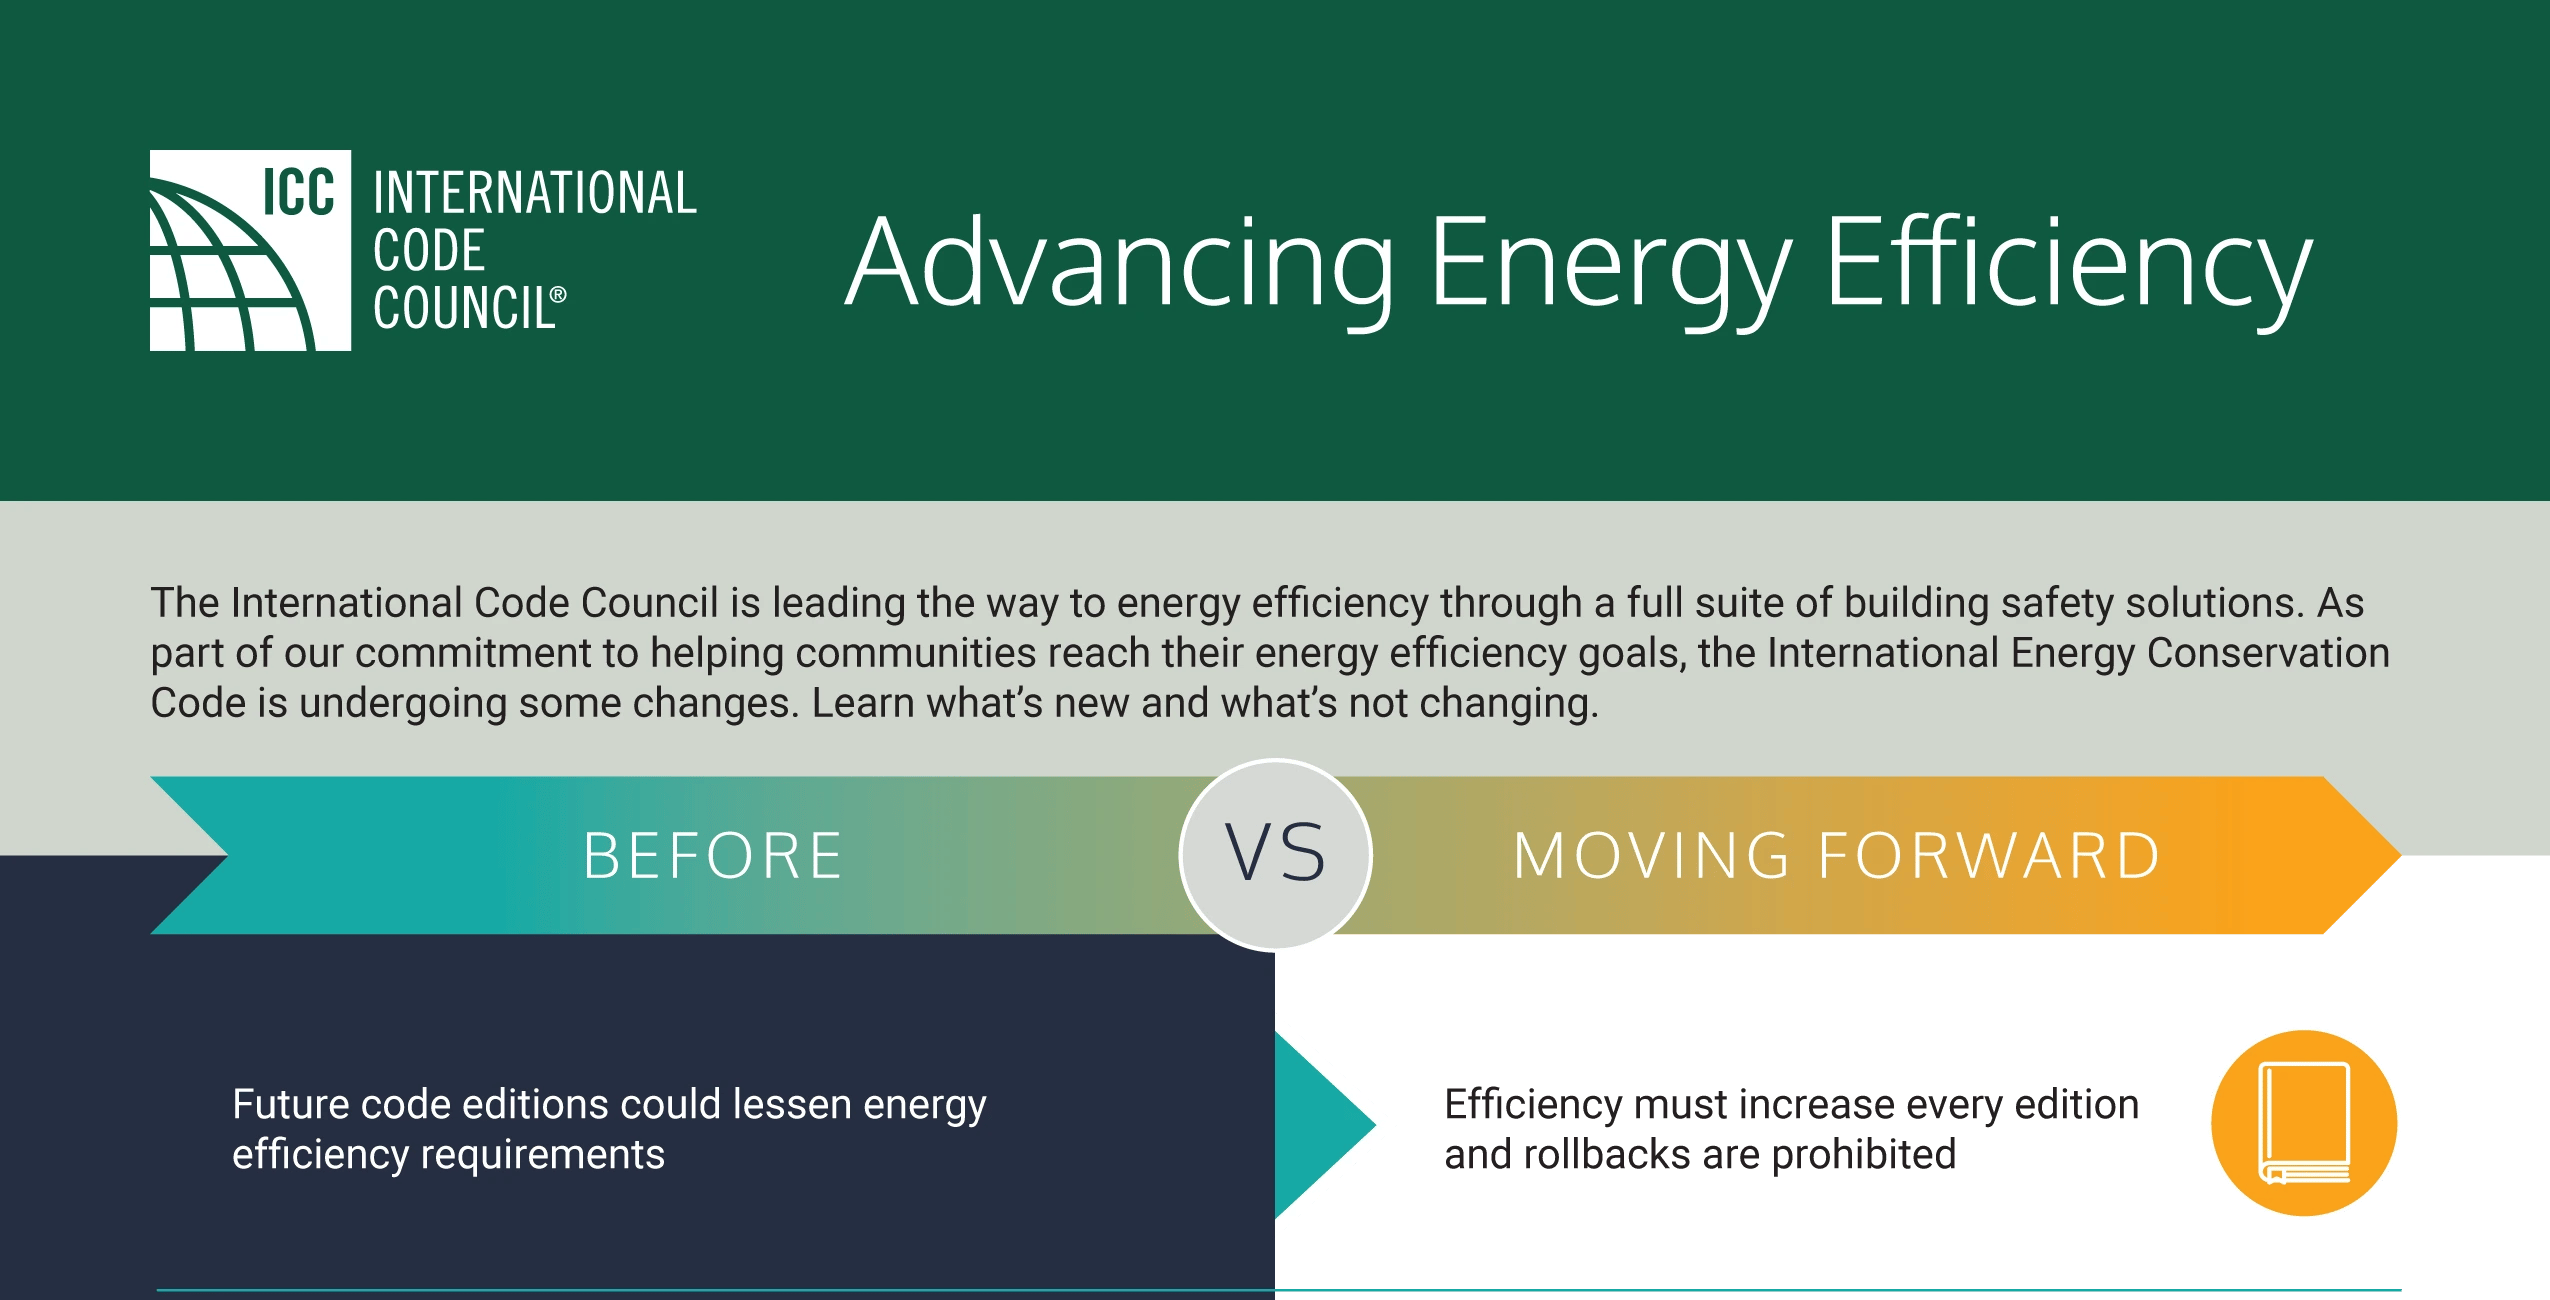 ICC Advancing Energy Efficiency (as of 03-21)